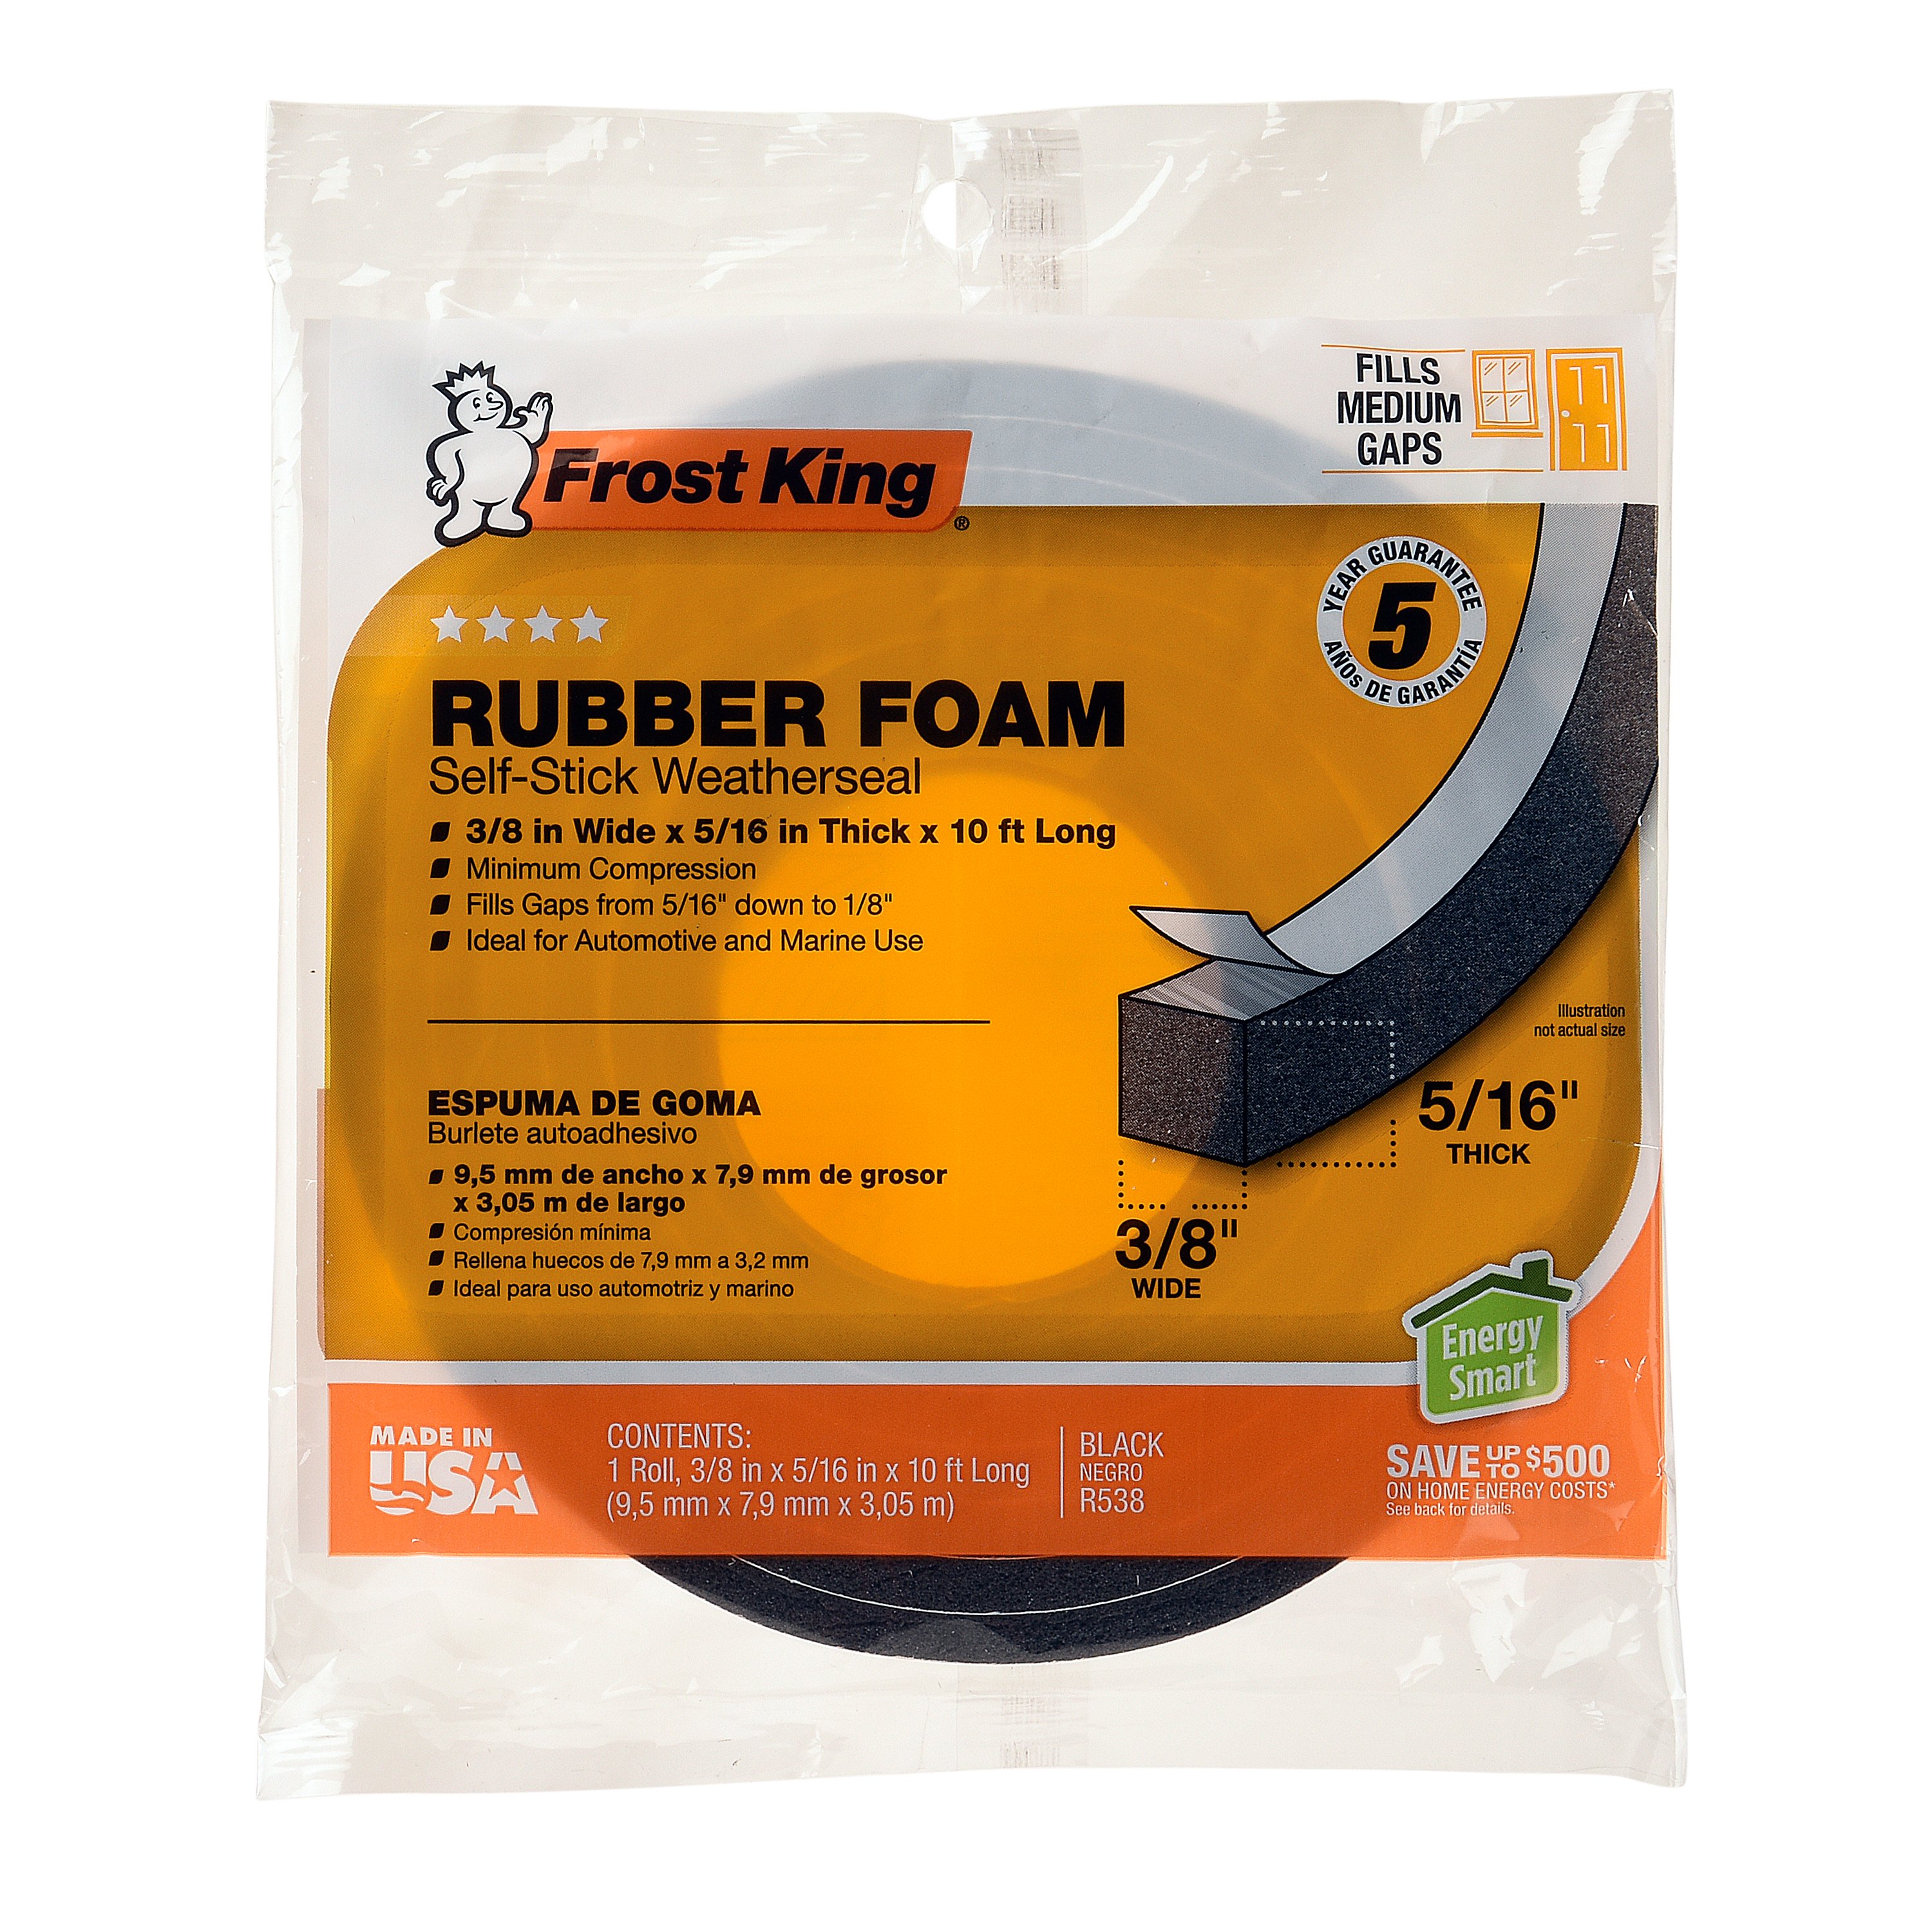 Frost King Sponge Rubber Foam Weatherseal, Black - R538AW